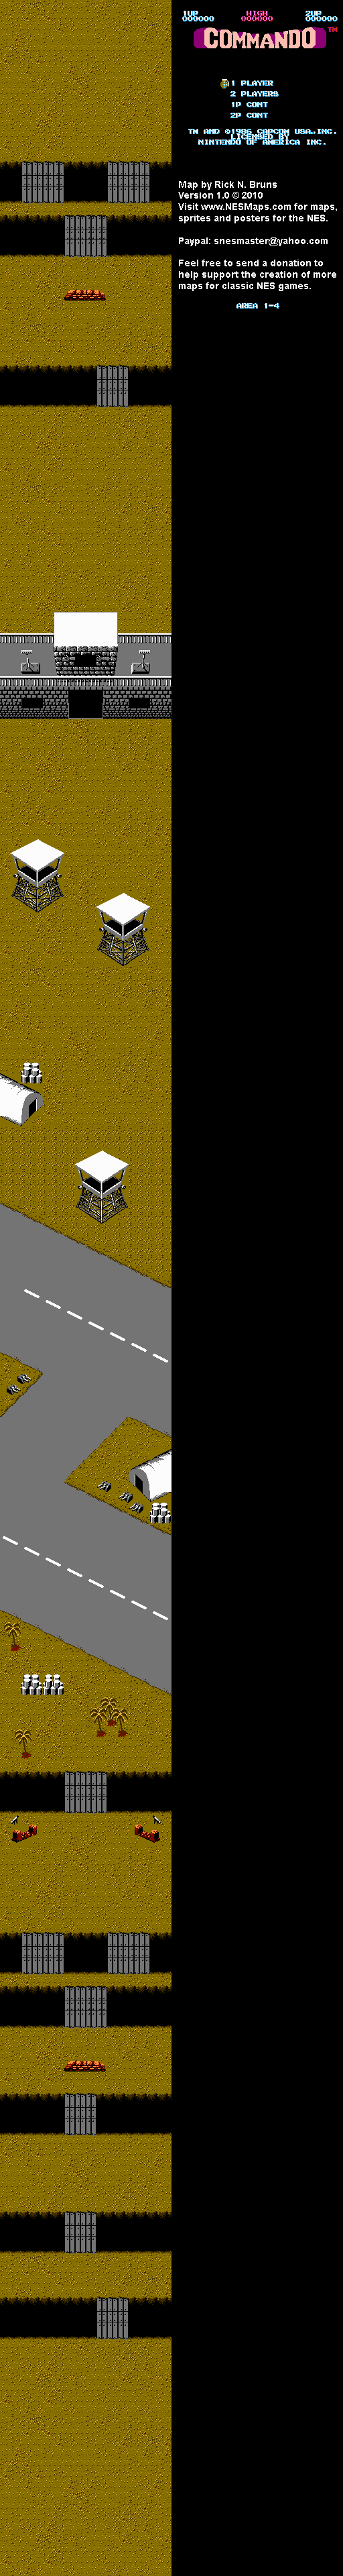 Commando - Area 1-4 - Nintendo NES Map BG